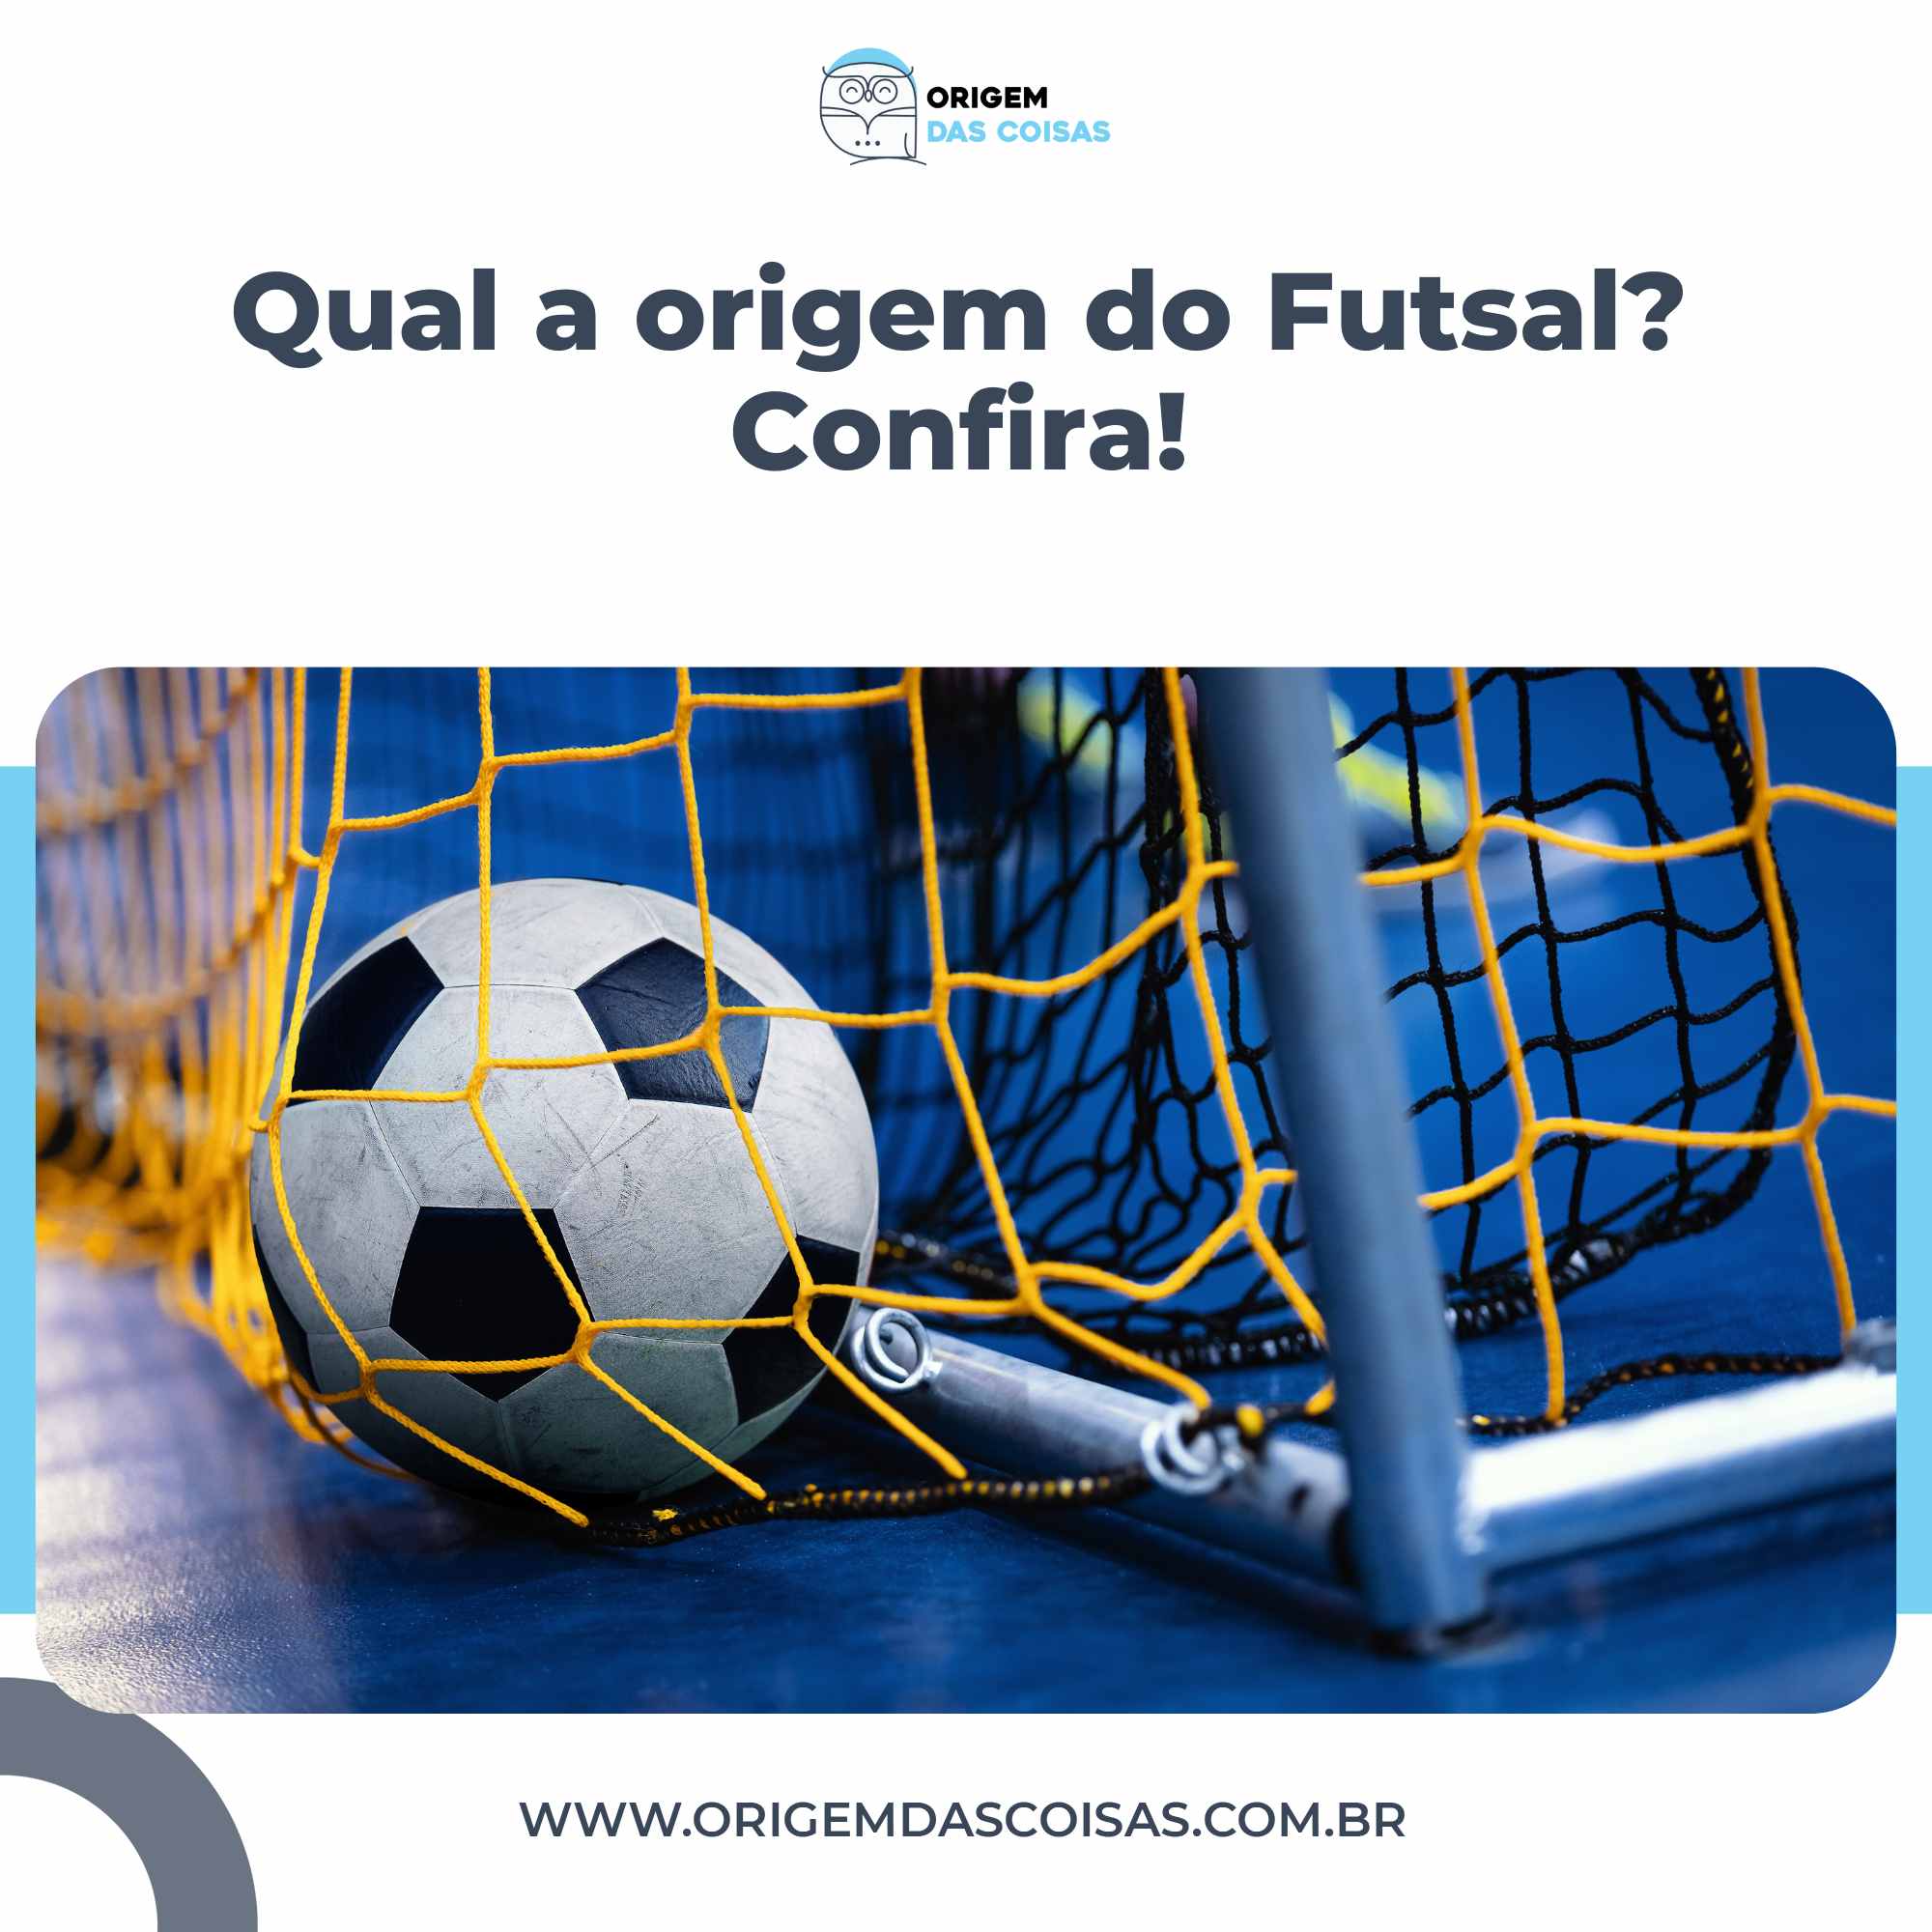 Qual a origem do Futsal Confira!